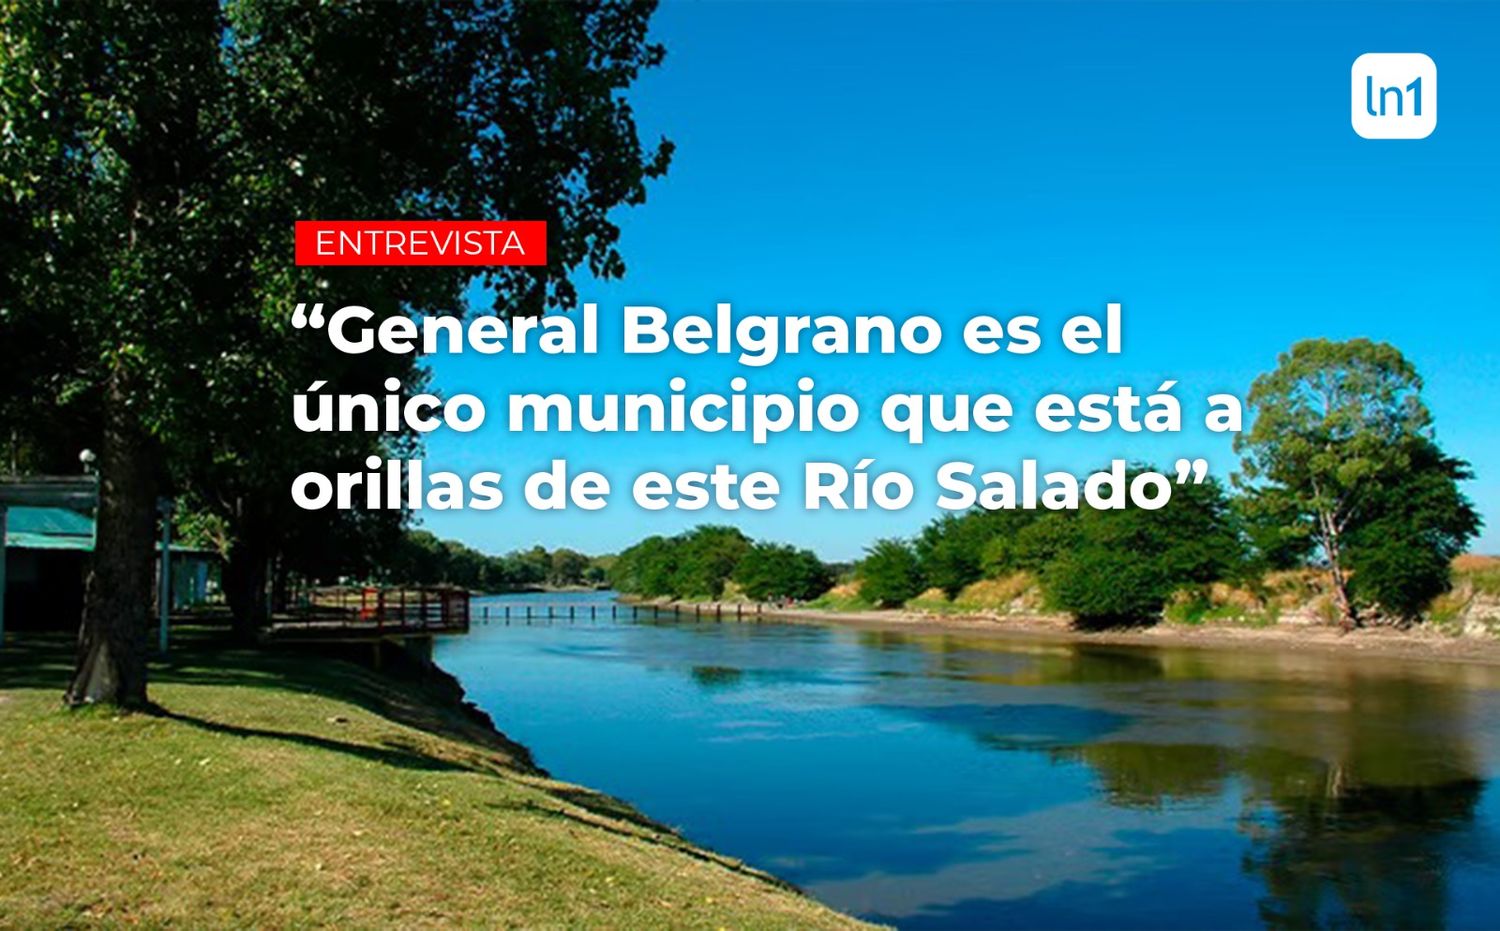 Turismo en General Belgrano: Termas, un "Bosque Encantado" y el Río Salado a 90 minutos de Capital Federal